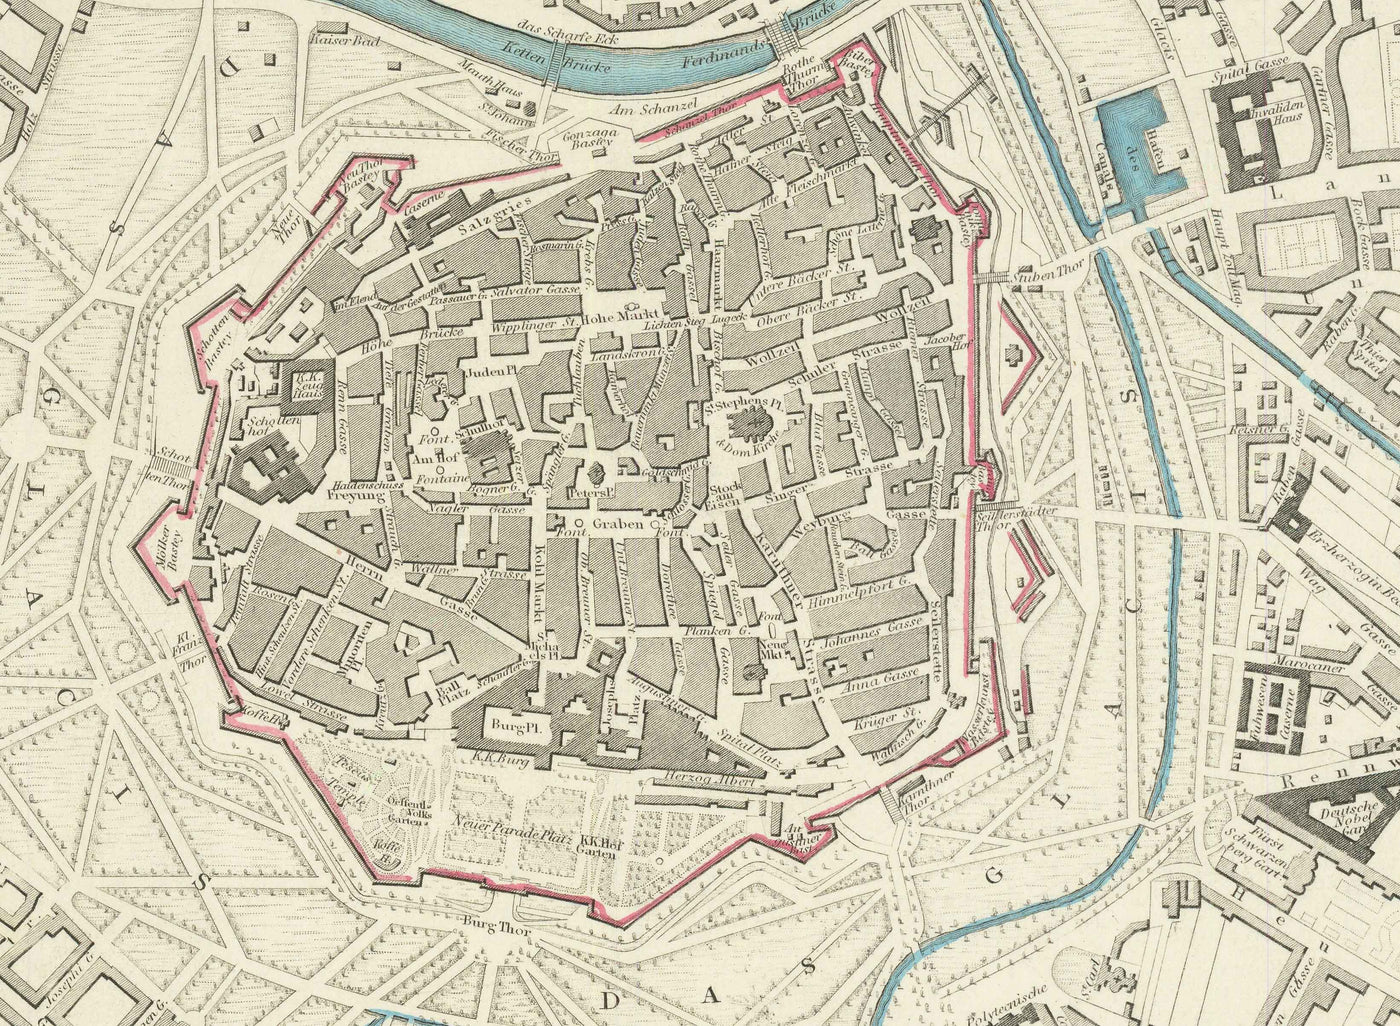 Alte Karte von Wien von SDUK aus dem Jahr 1887 – Donau, Alte Donau, Graben, Rennweg, Karlskirche